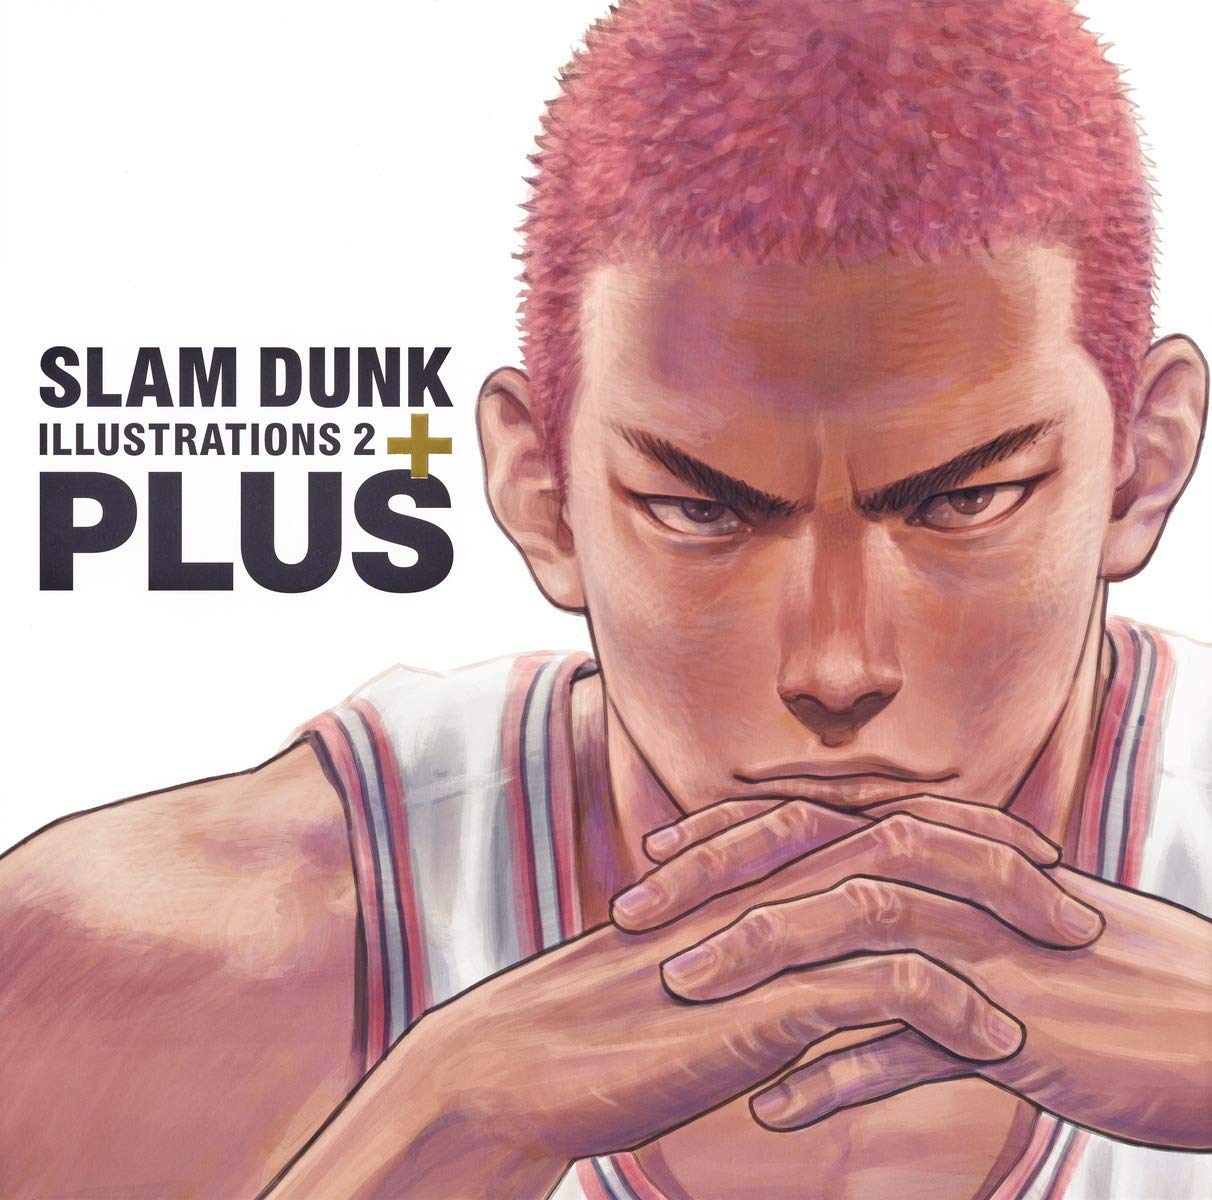 Slam Dunk は 漫画のタブー に挑んだ作品だった 絶対的存在になった理由とその影響 Real Sound リアルサウンド ブック